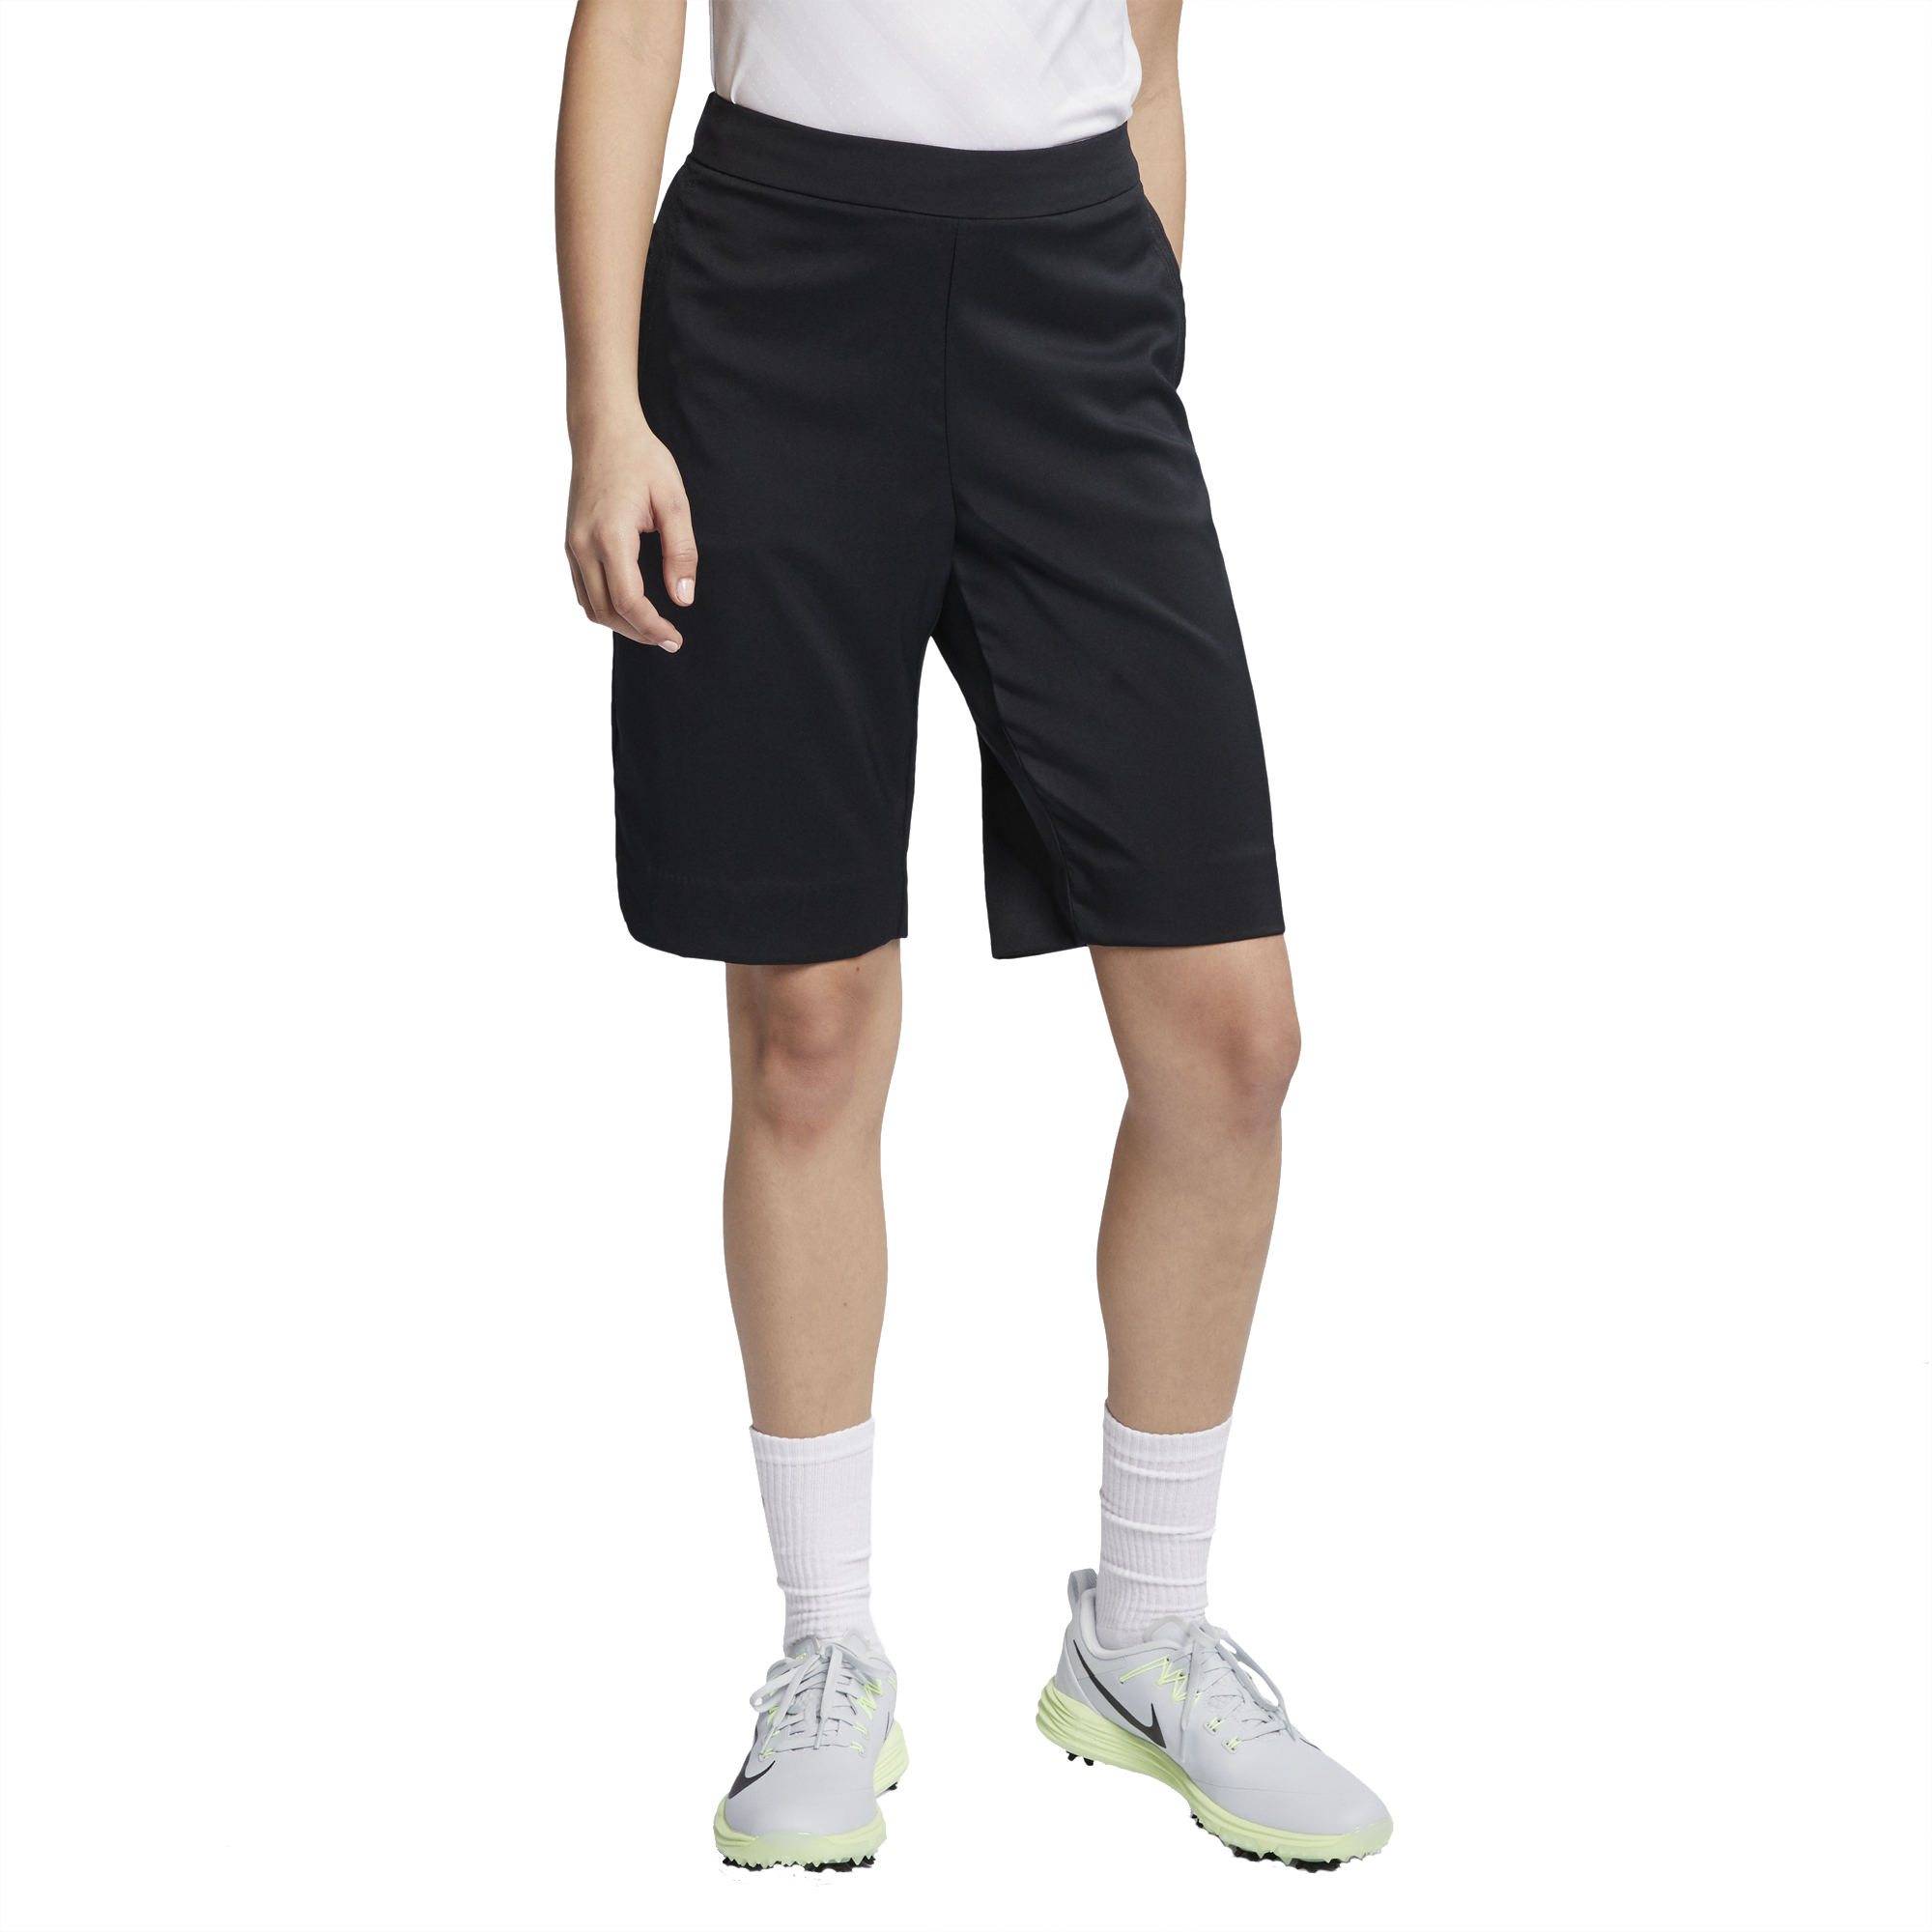 Nike ACG Dri-Fit шорты. Шорты Nike Golf 2004. Nike Golf shorts. Nike Golf шорты. Nike fit шорты